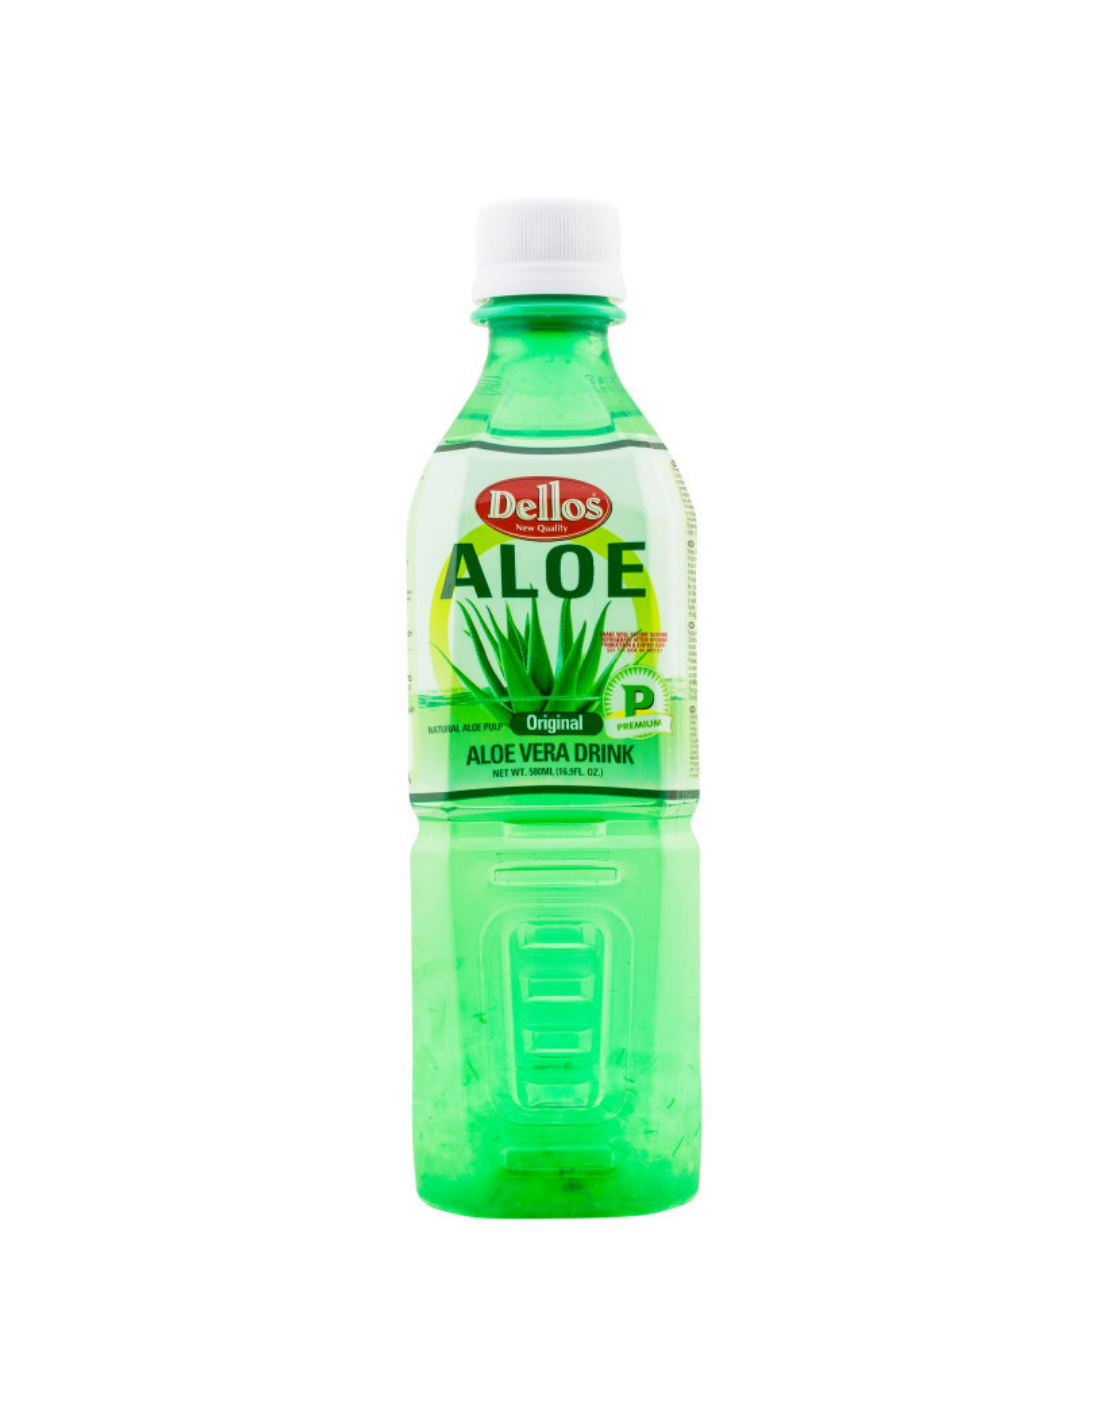 Suc Aloe Vera Original, 0.5L alcooldiscount.ro